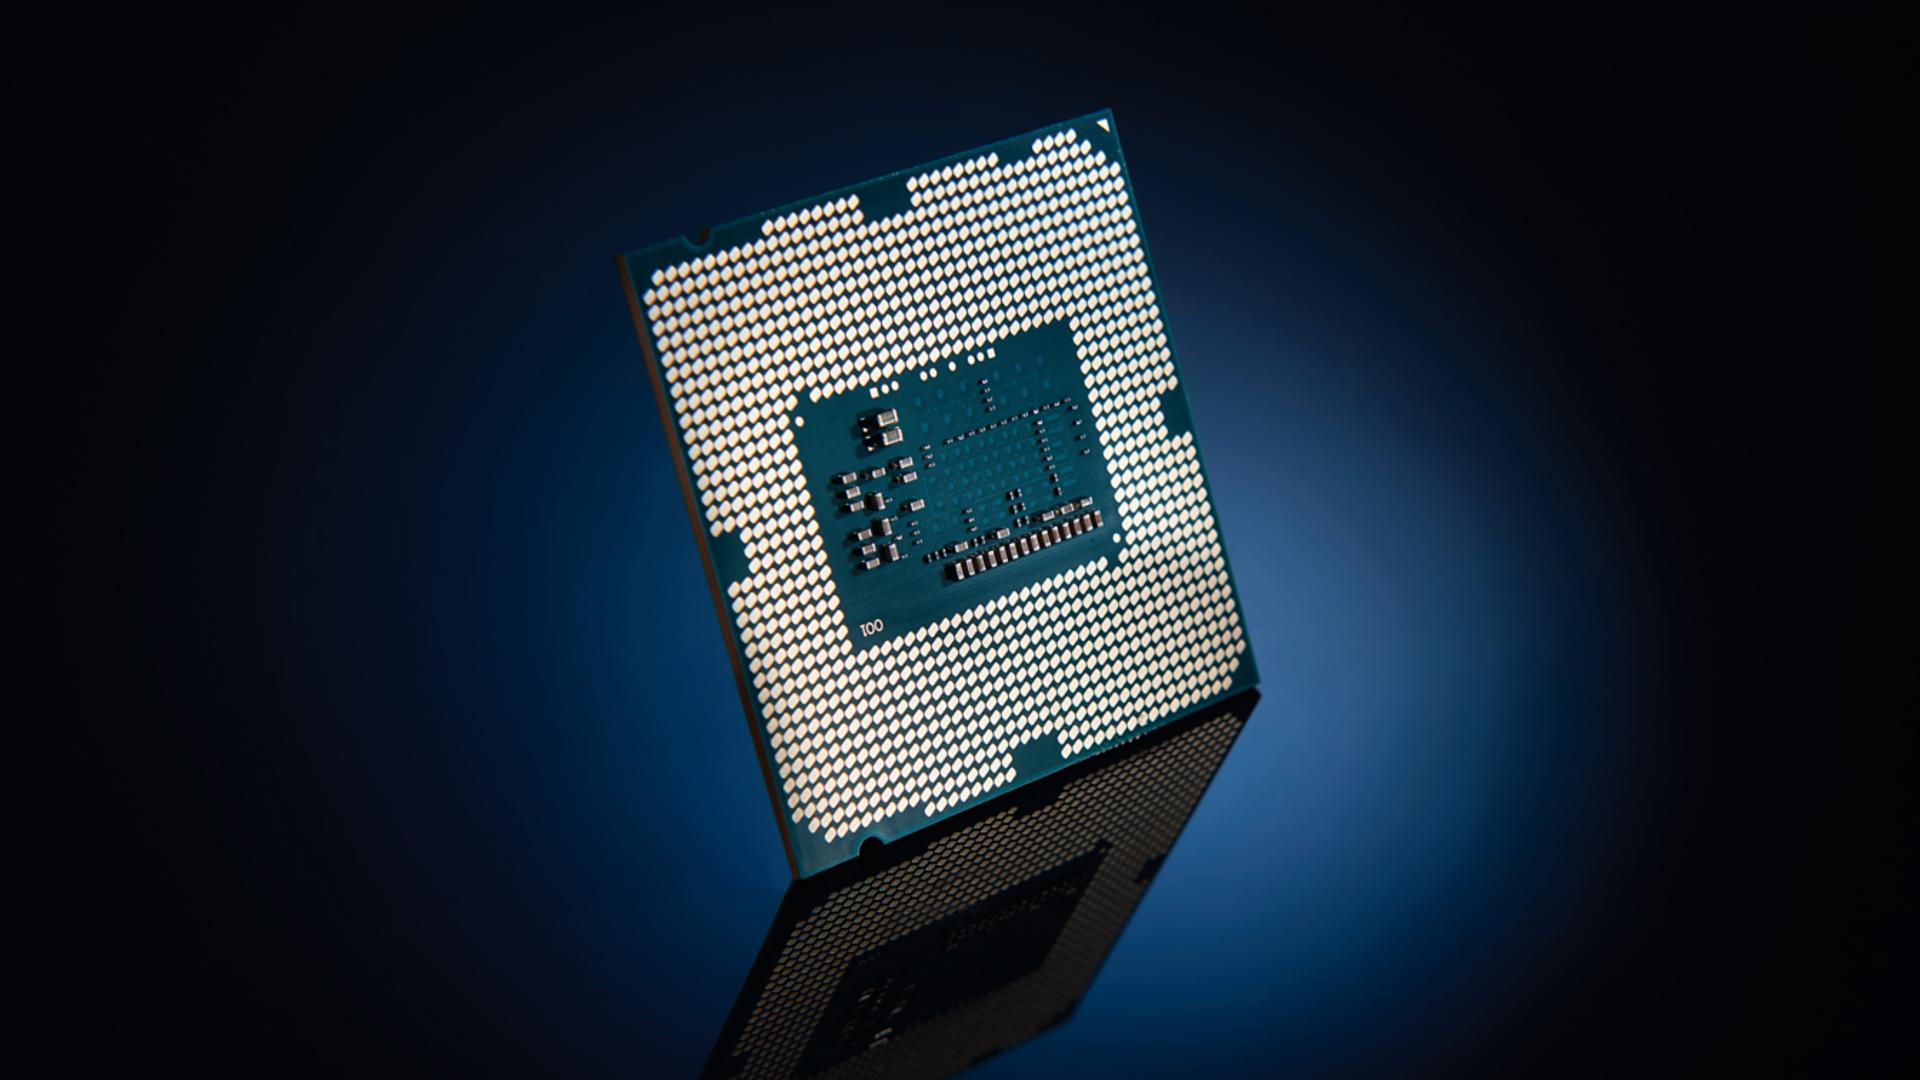 Sforum - Trang thông tin công nghệ mới nhất Intel-Rocket-Lake-Desktop-CPUs Bạn đã hiểu đúng về tiến trình 7nm, 10nm? Có thật con số này càng nhỏ thì càng tốt? 